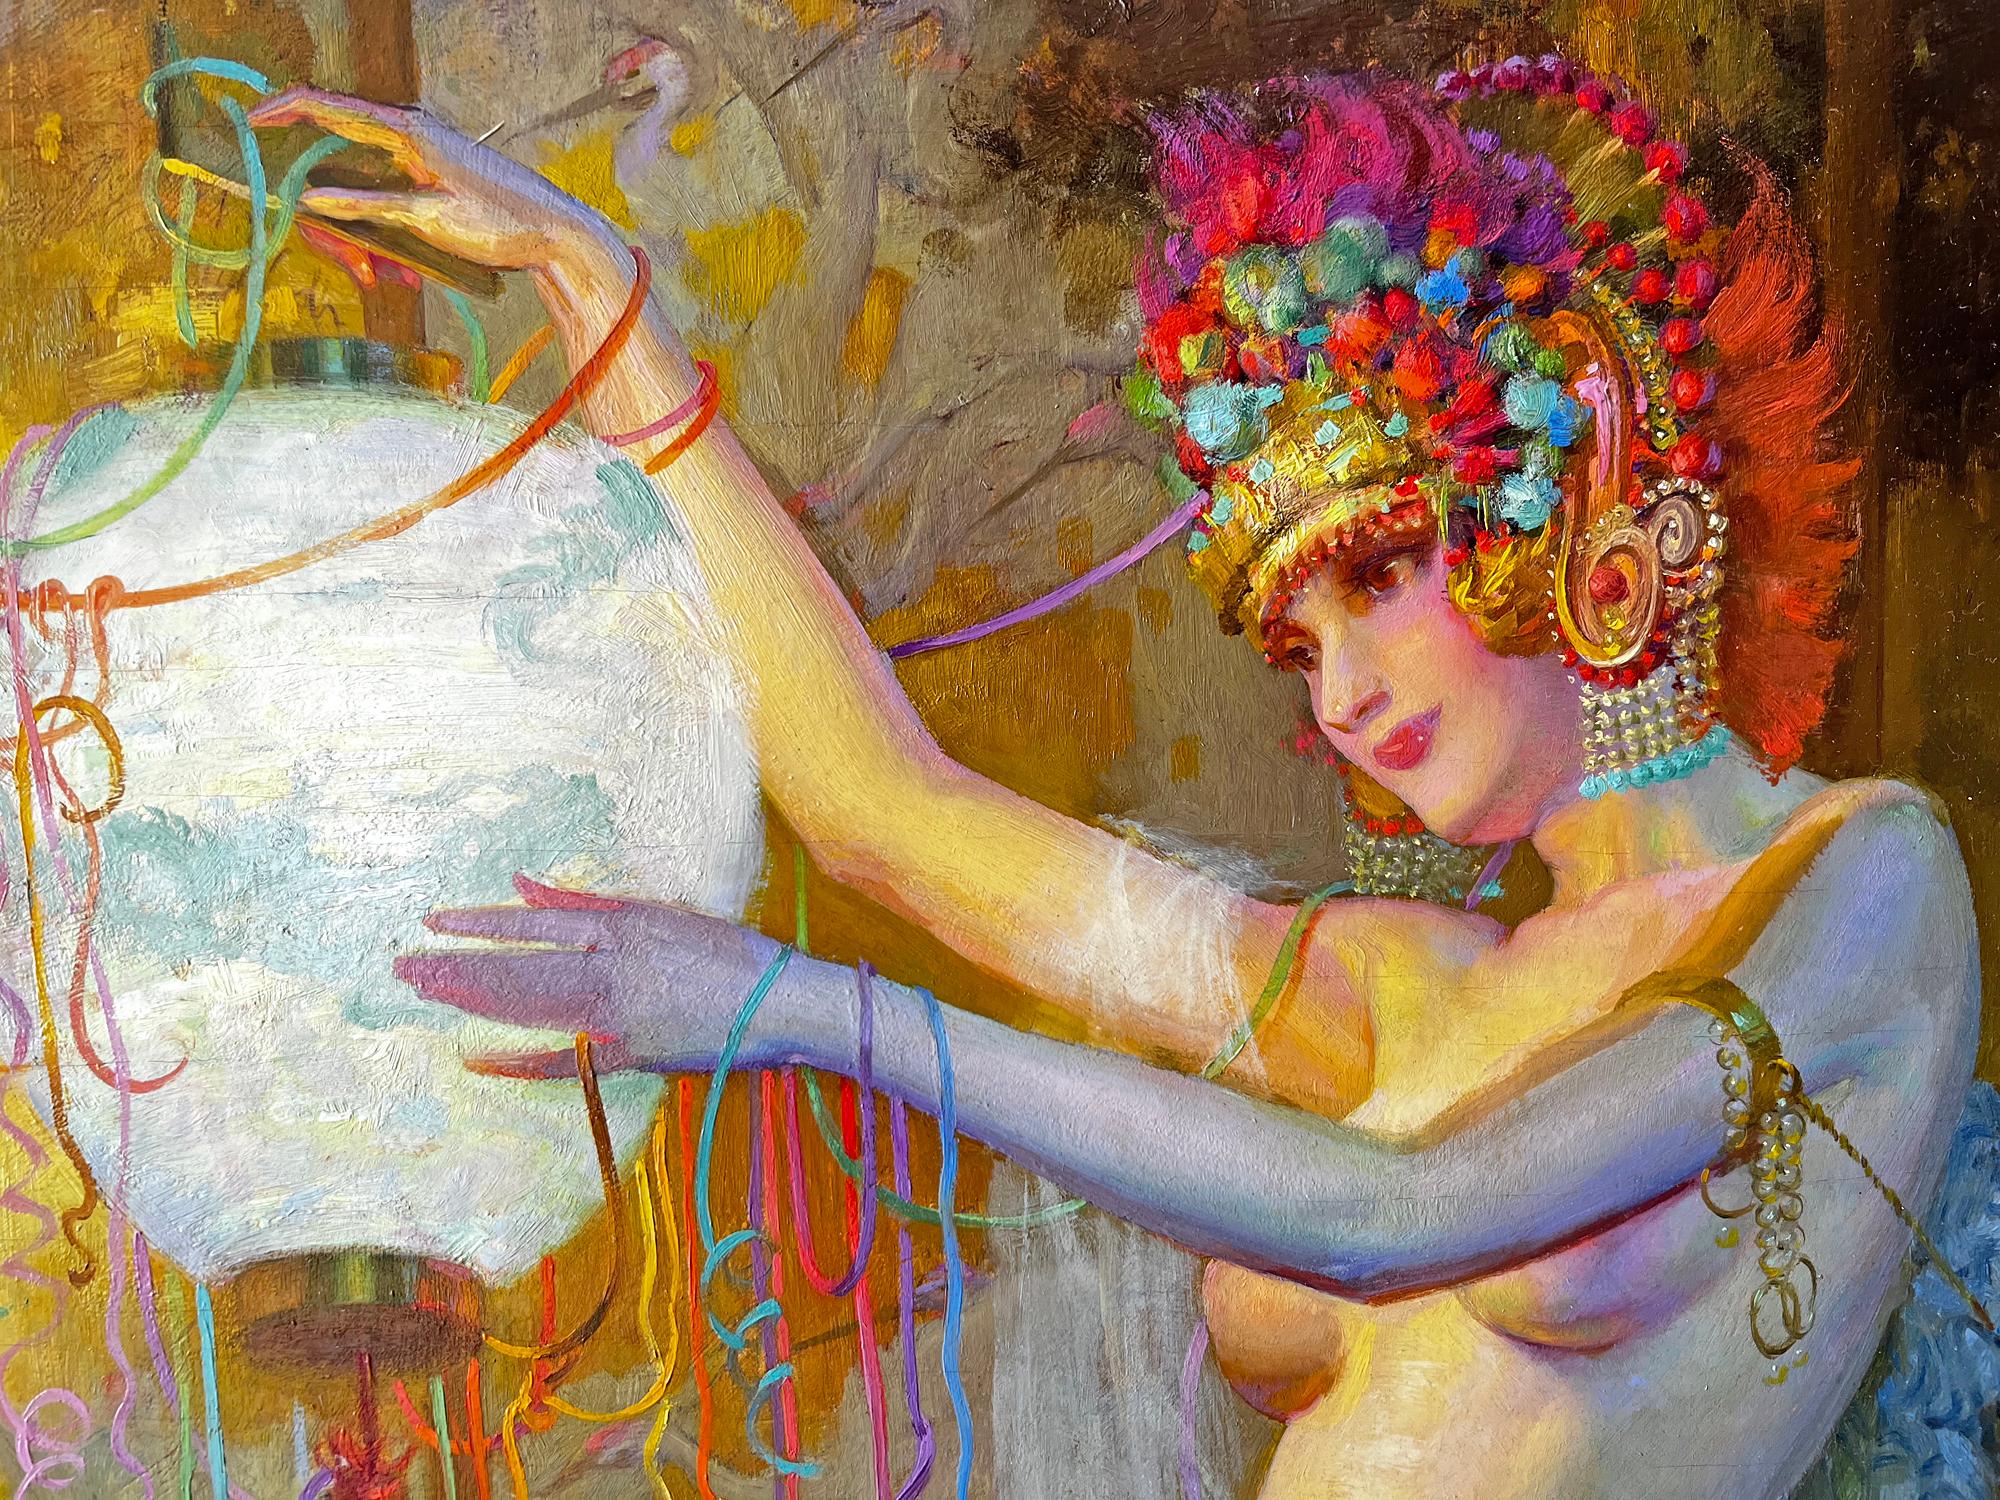 Akt Tänzerin mit verschnörkeltem Blumenmuster  Kopfschmuck und japanische Laterne  - Karneval  (Post-Impressionismus), Painting, von Theodore Lukits